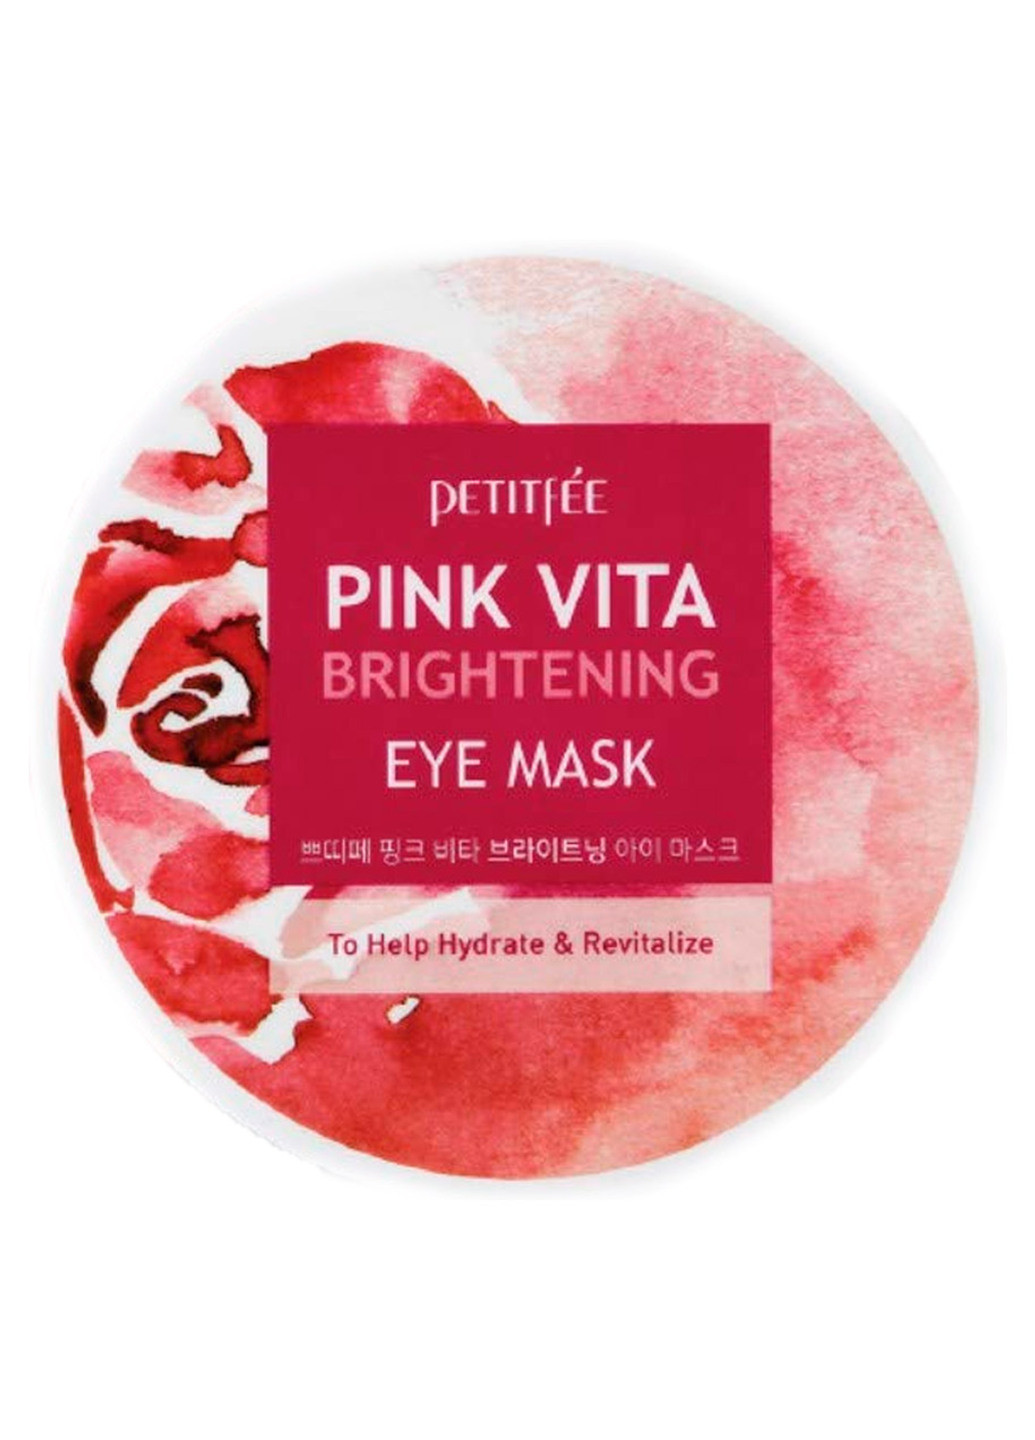 Освітлюючі патчі під очі на основі есенції рожевої води Pink Vita Brightening Eye Mask (60 шт.) Petitfee & Koelf не определен (201783379)